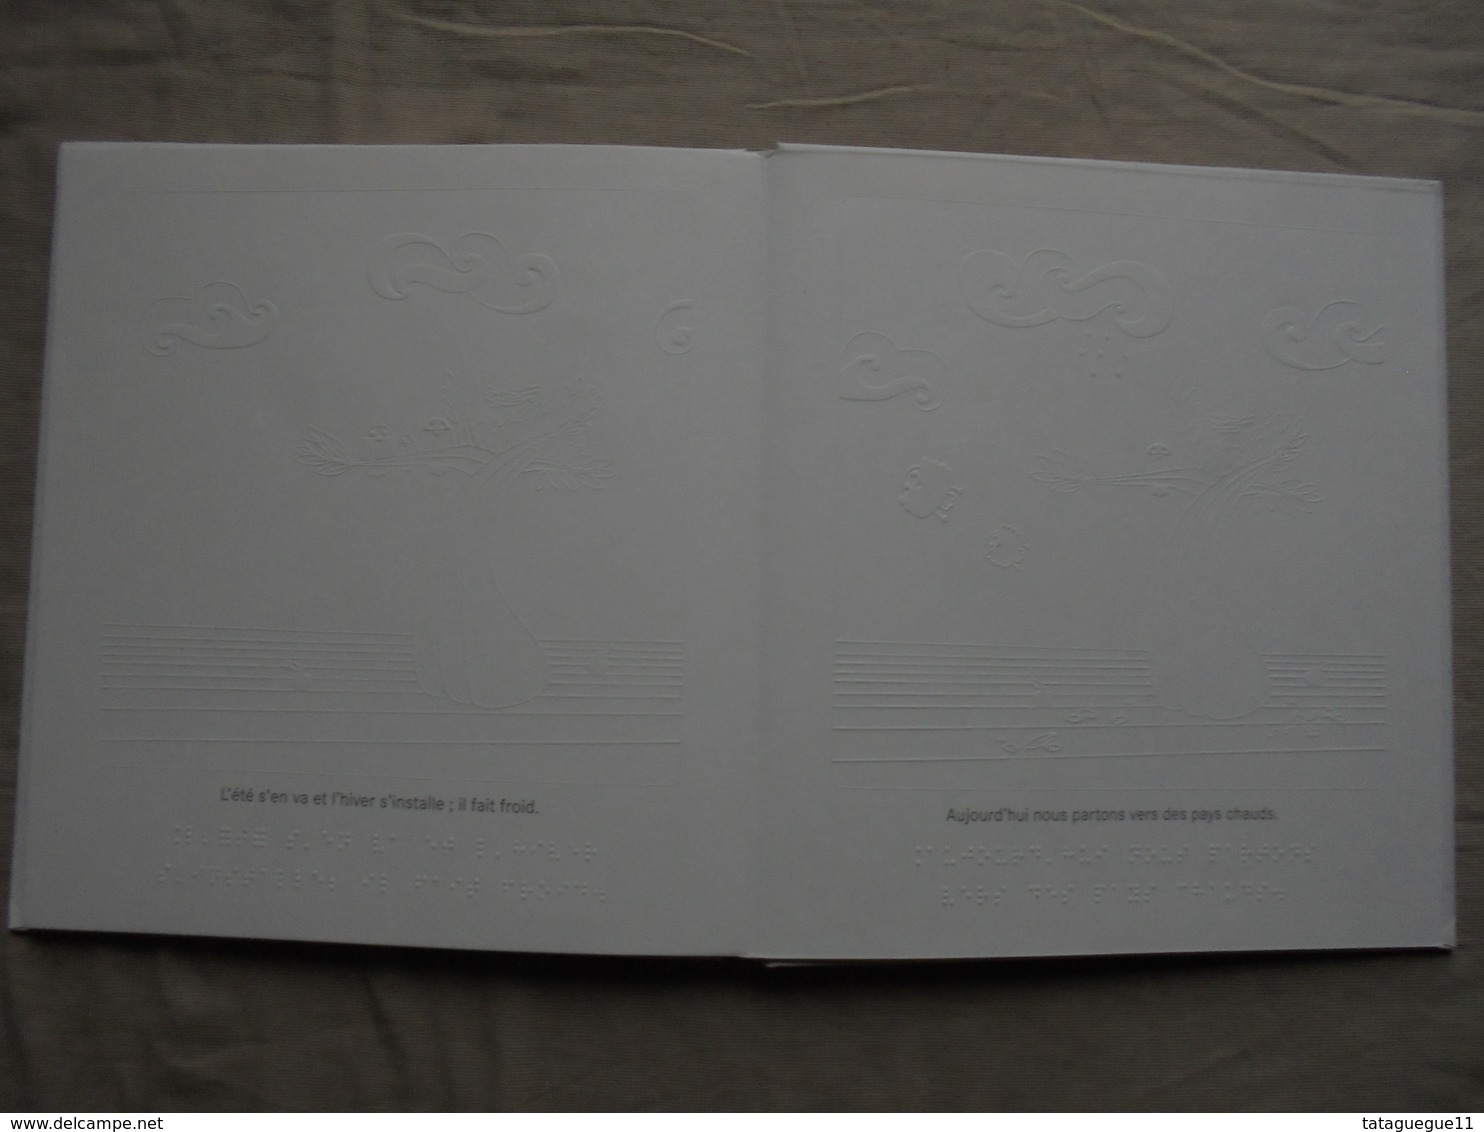 Vintage - Livre en braille Le Nid par Stéphanie Tabet Bayard 2008